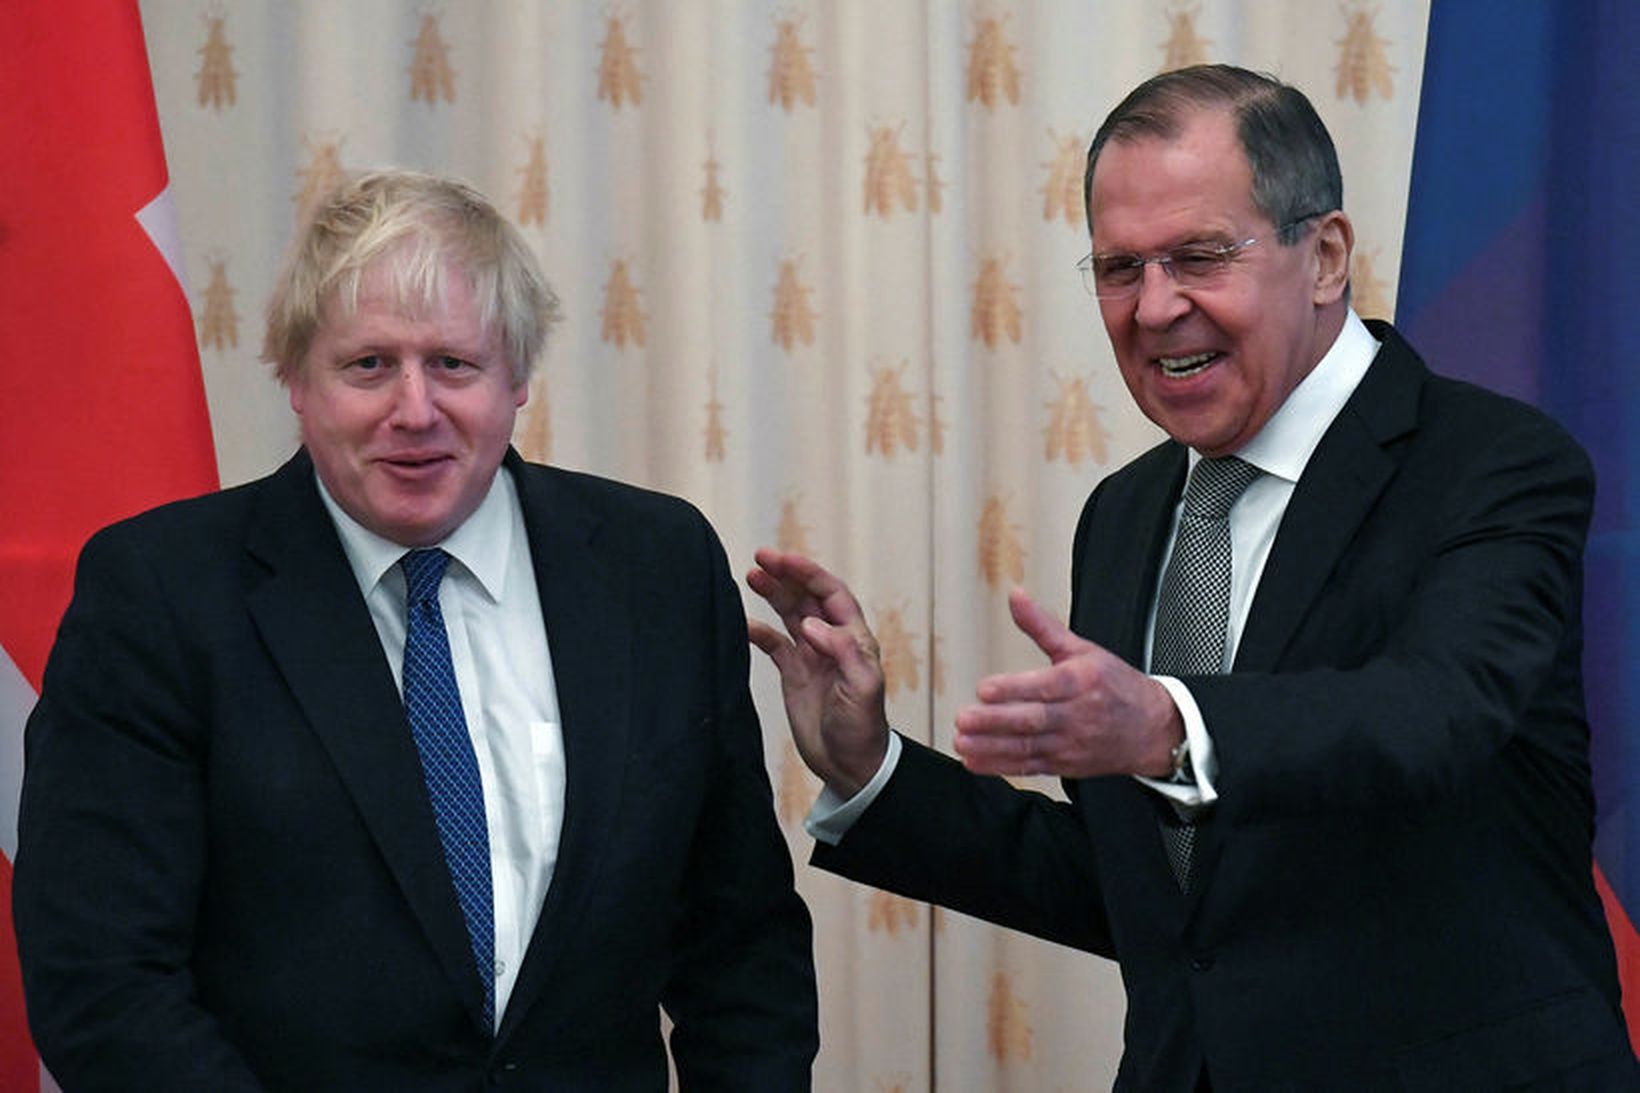 Boris Johnson, utanríkisráðherra Bretlands, og Sergei Lavrov, utanríkisráðherra Rússlands, slógu …